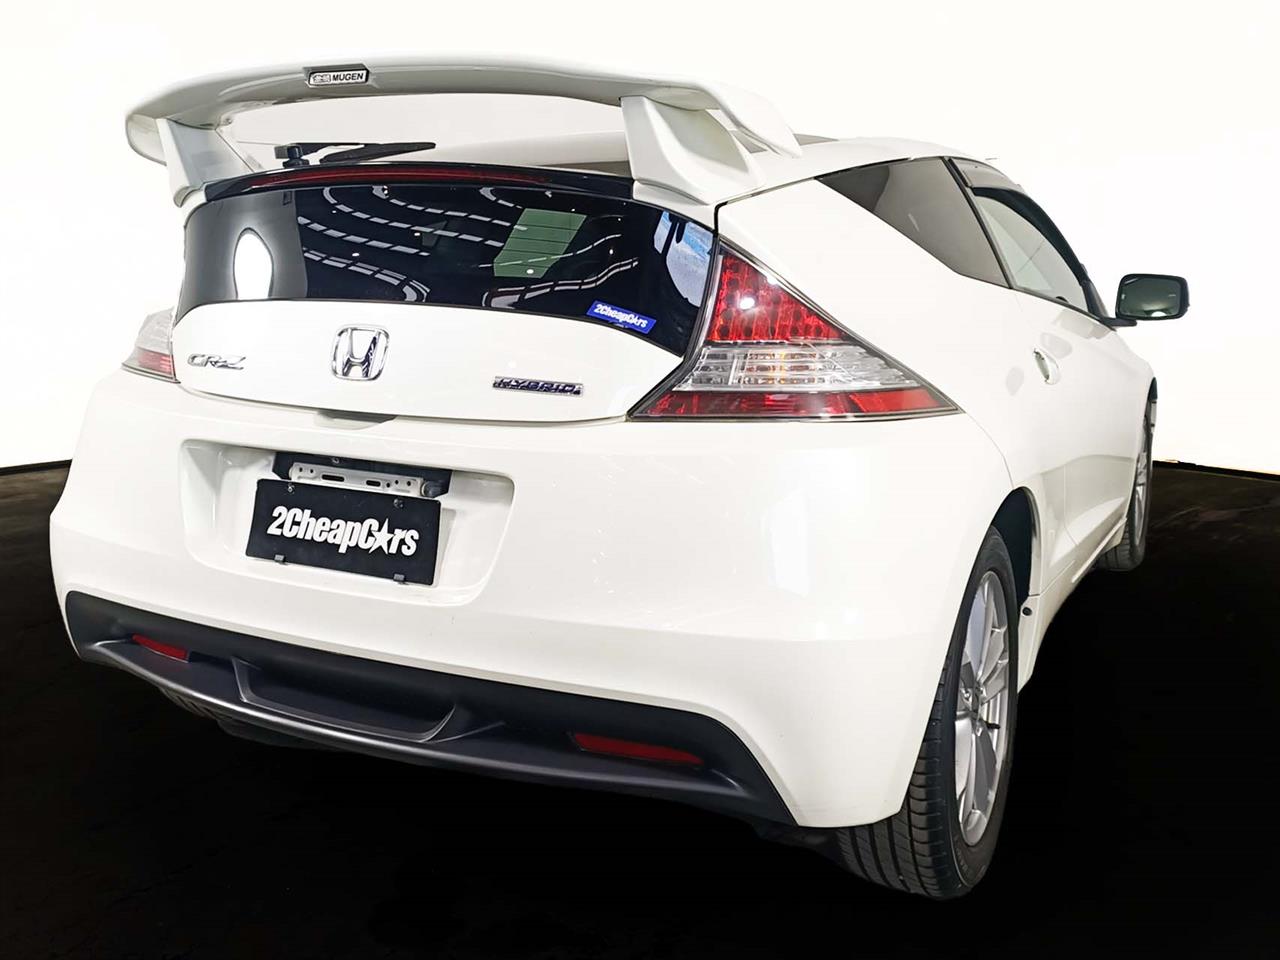 2010 Honda CR-Z Hybrid 